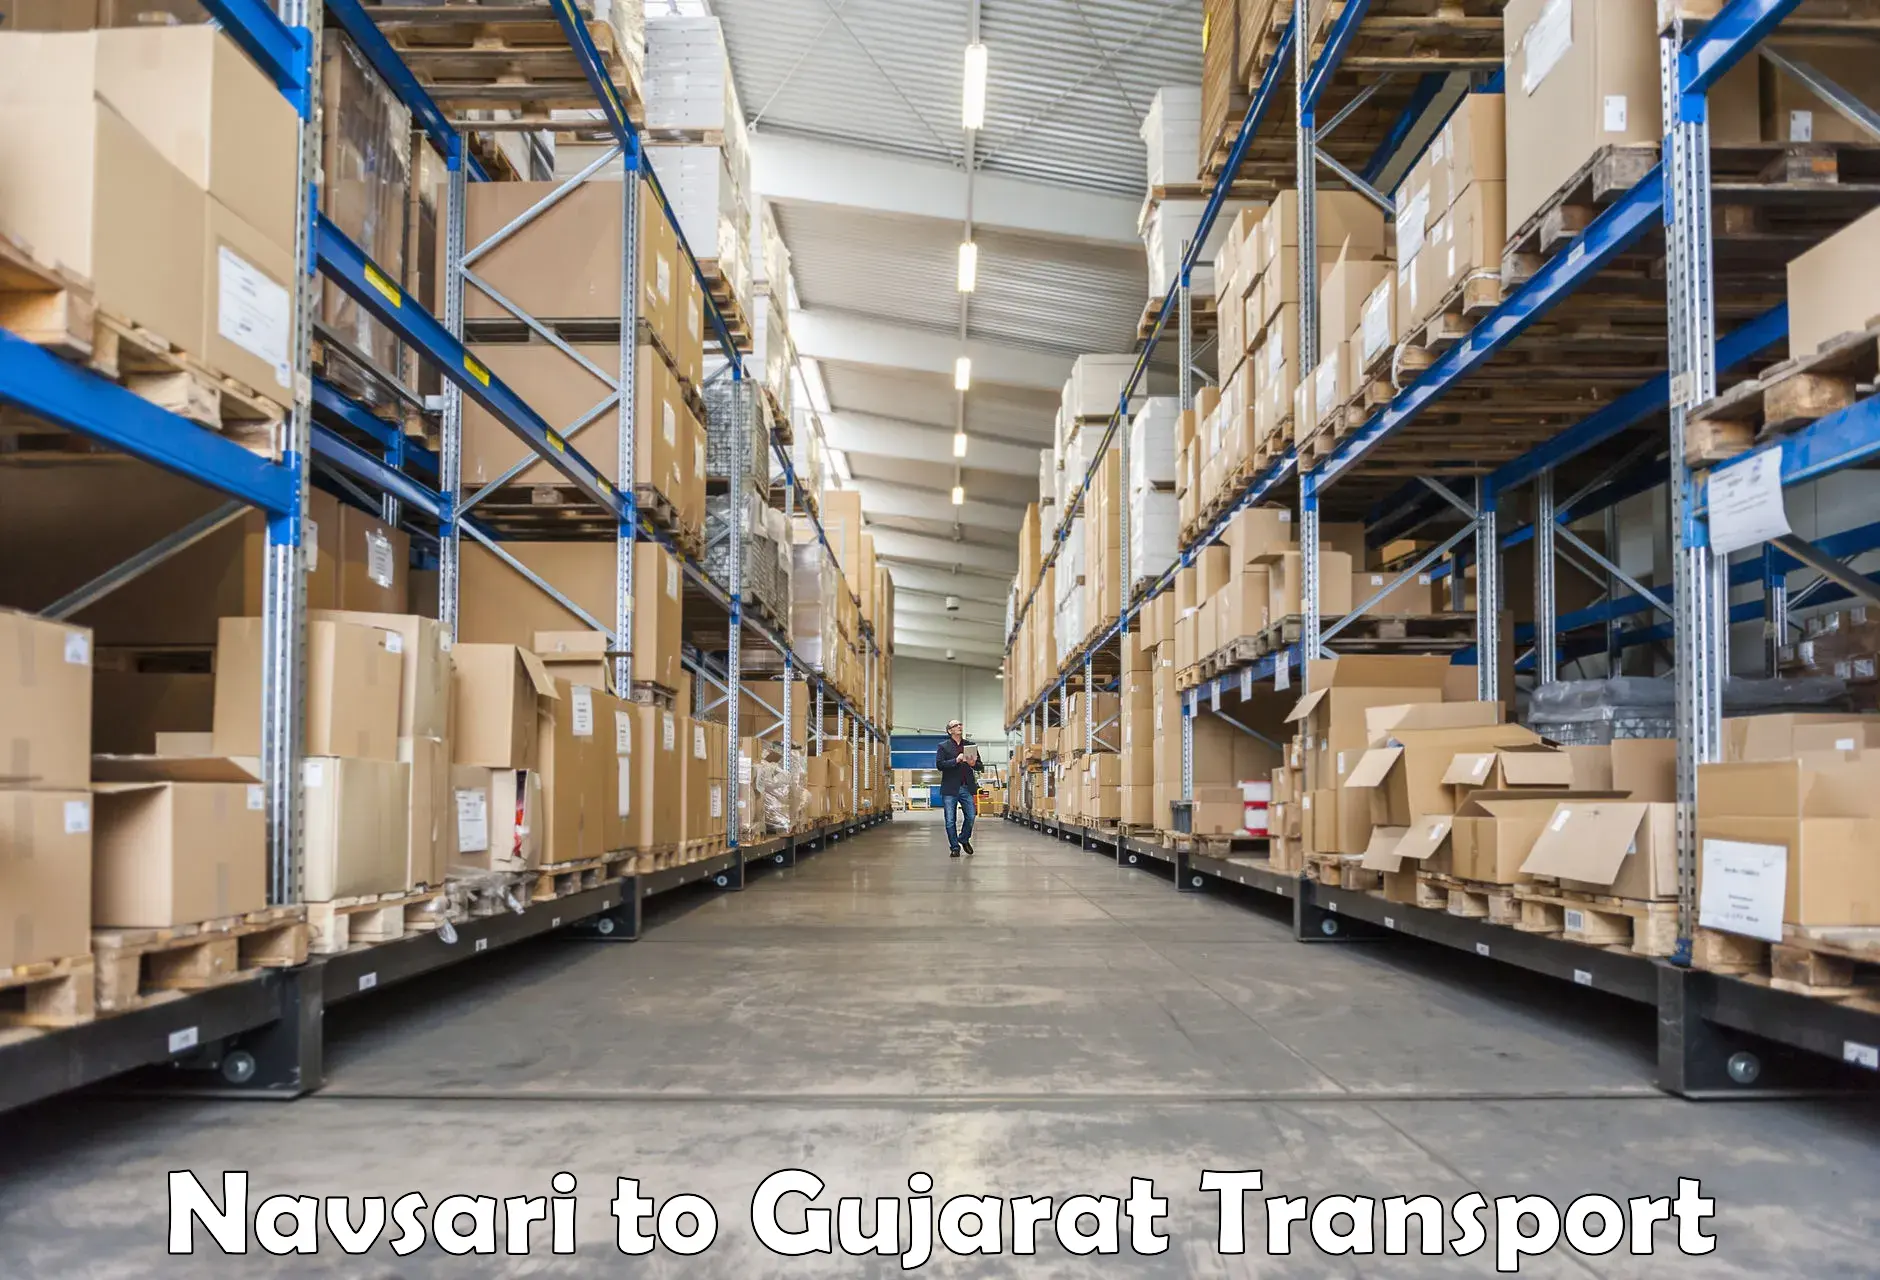 Transport in sharing Navsari to IIT Gandhi Nagar